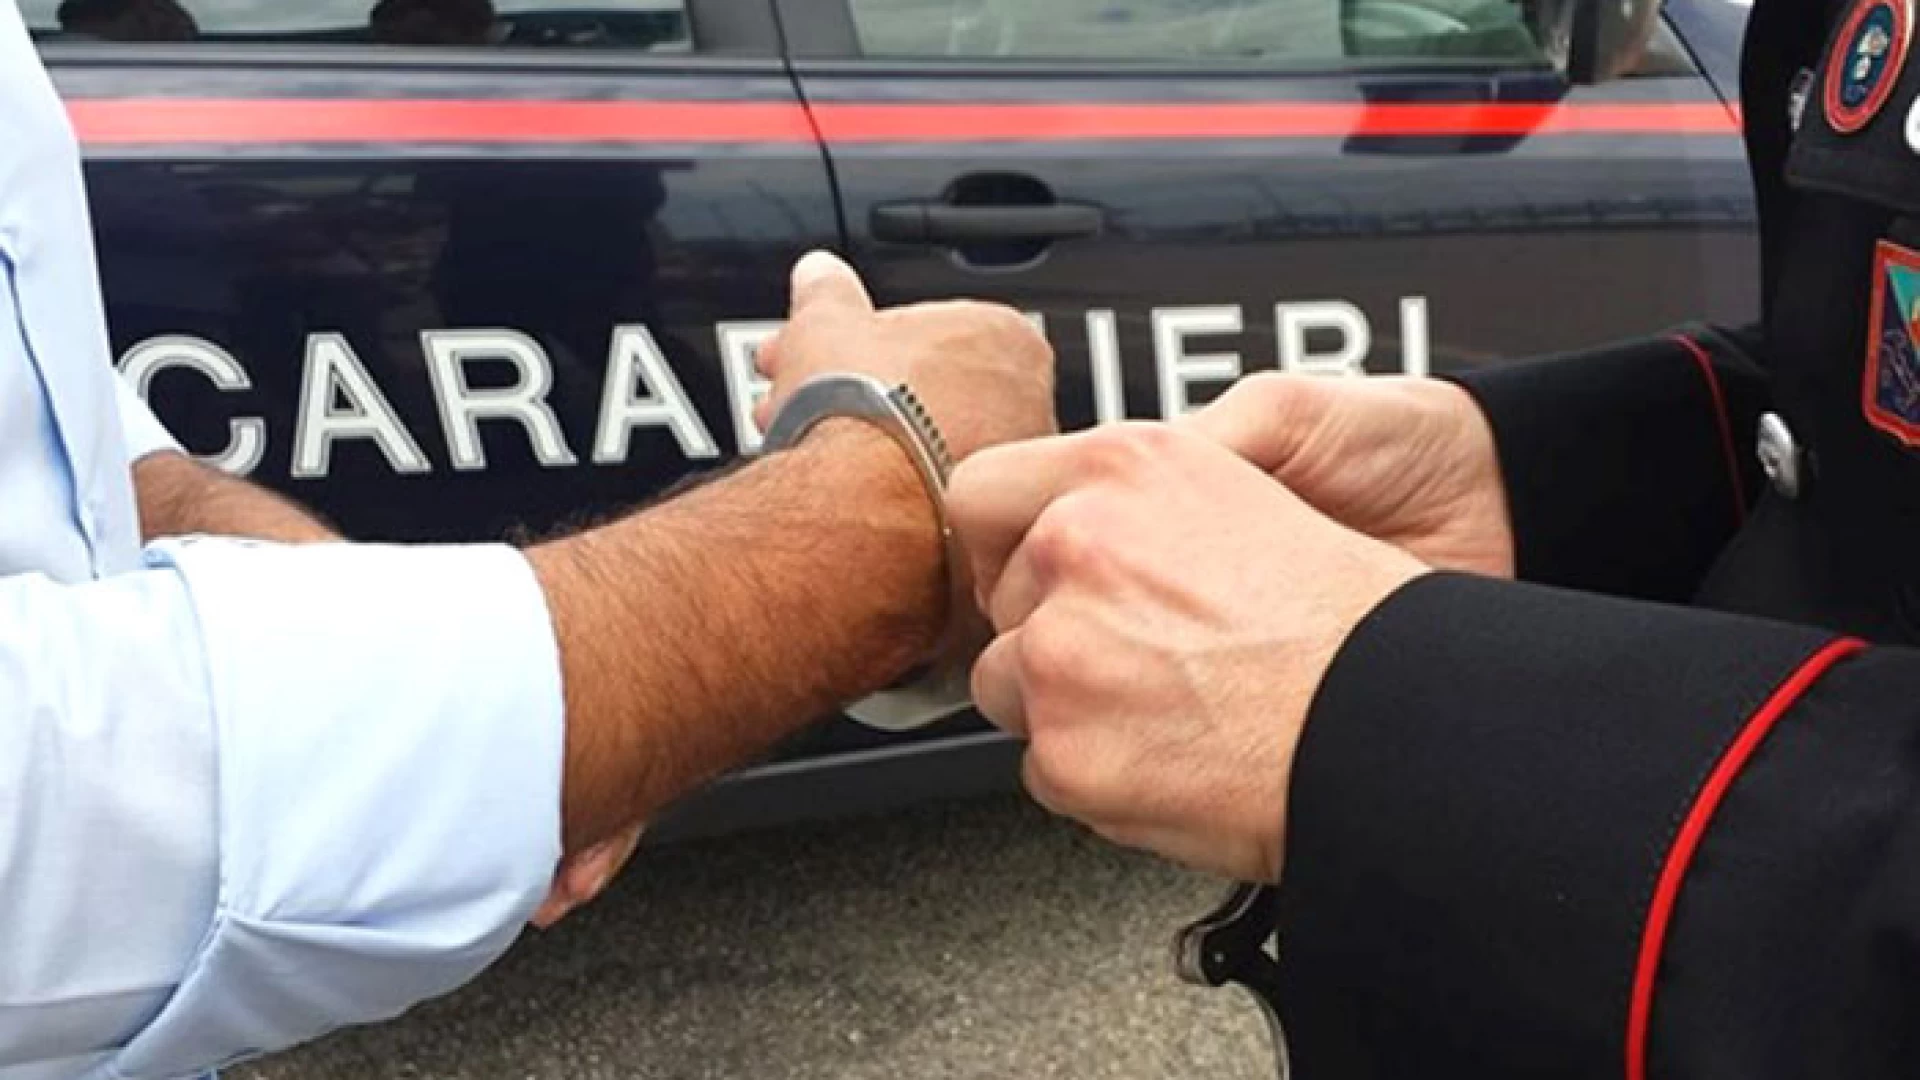 Isernia: Ricercato in tutta Europa, latitante rumeno arrestato dai Carabinieri di Forlì del Sannio.